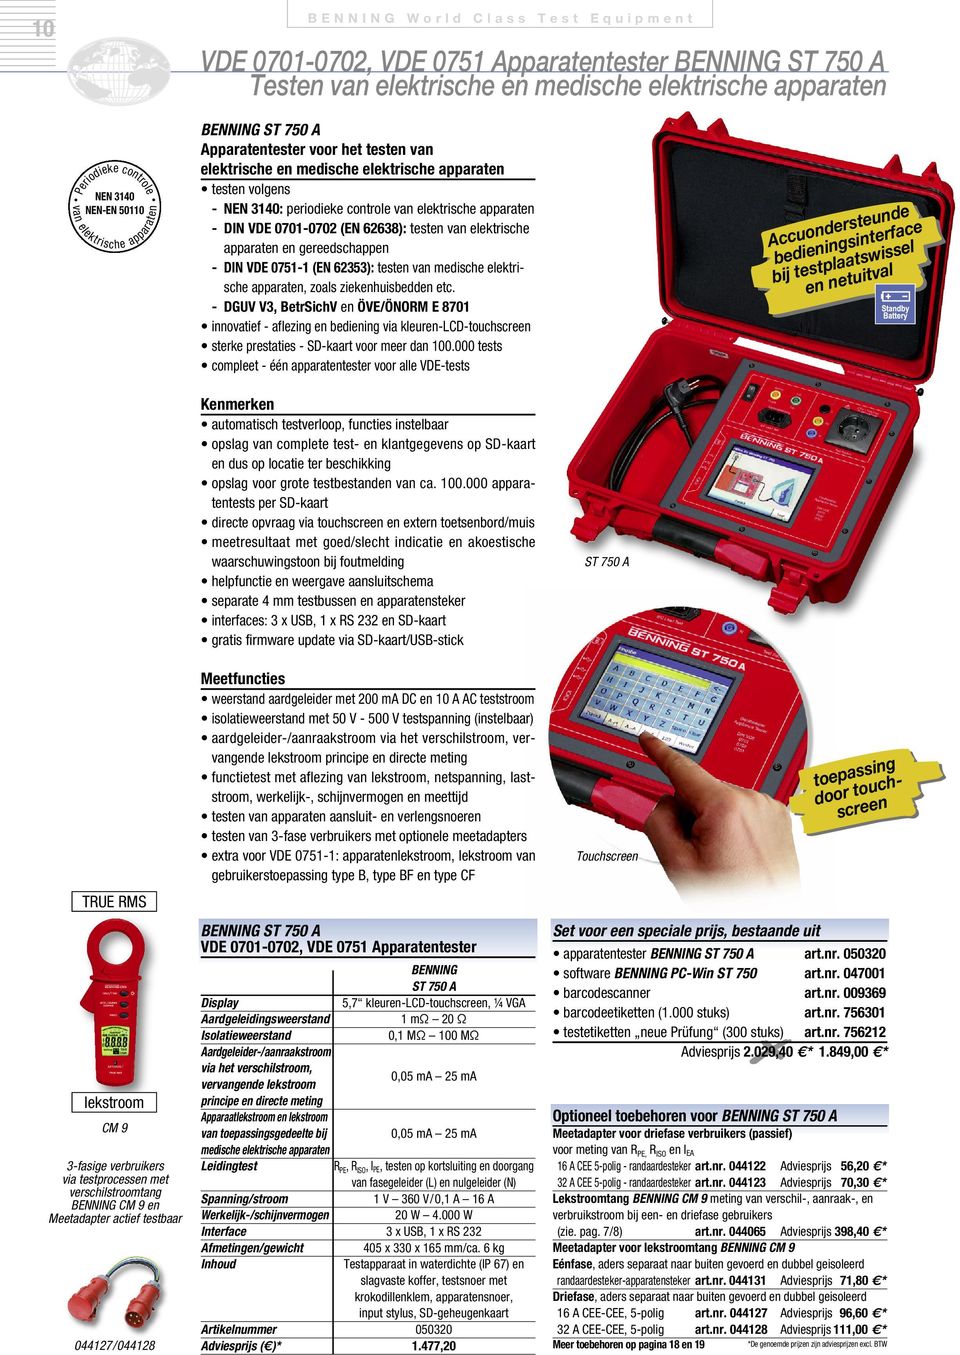 elektrische apparaten - DIN VDE 0701-0702 (EN 62638): testen van elektrische apparaten en gereedschappen - DIN VDE 0751-1 (EN 62353): testen van medische elektrische apparaten, zoals ziekenhuisbedden